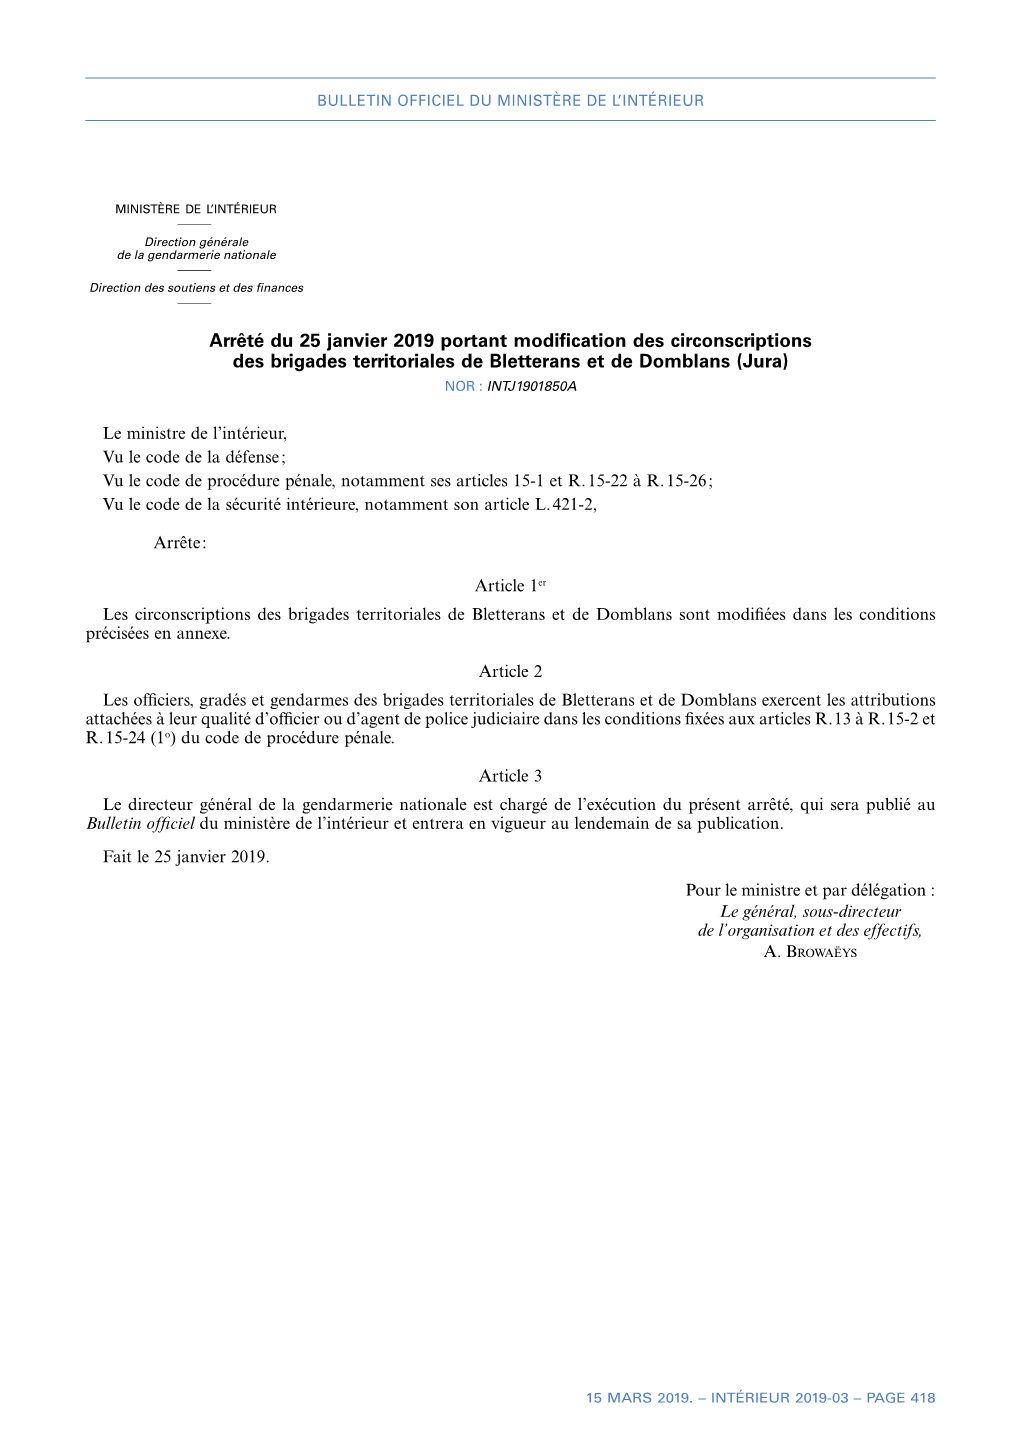 Arrêté Du 25 Janvier 2019 Portant Modification Des Circonscriptions Des Brigades Territoriales De Bletterans Et De Domblans